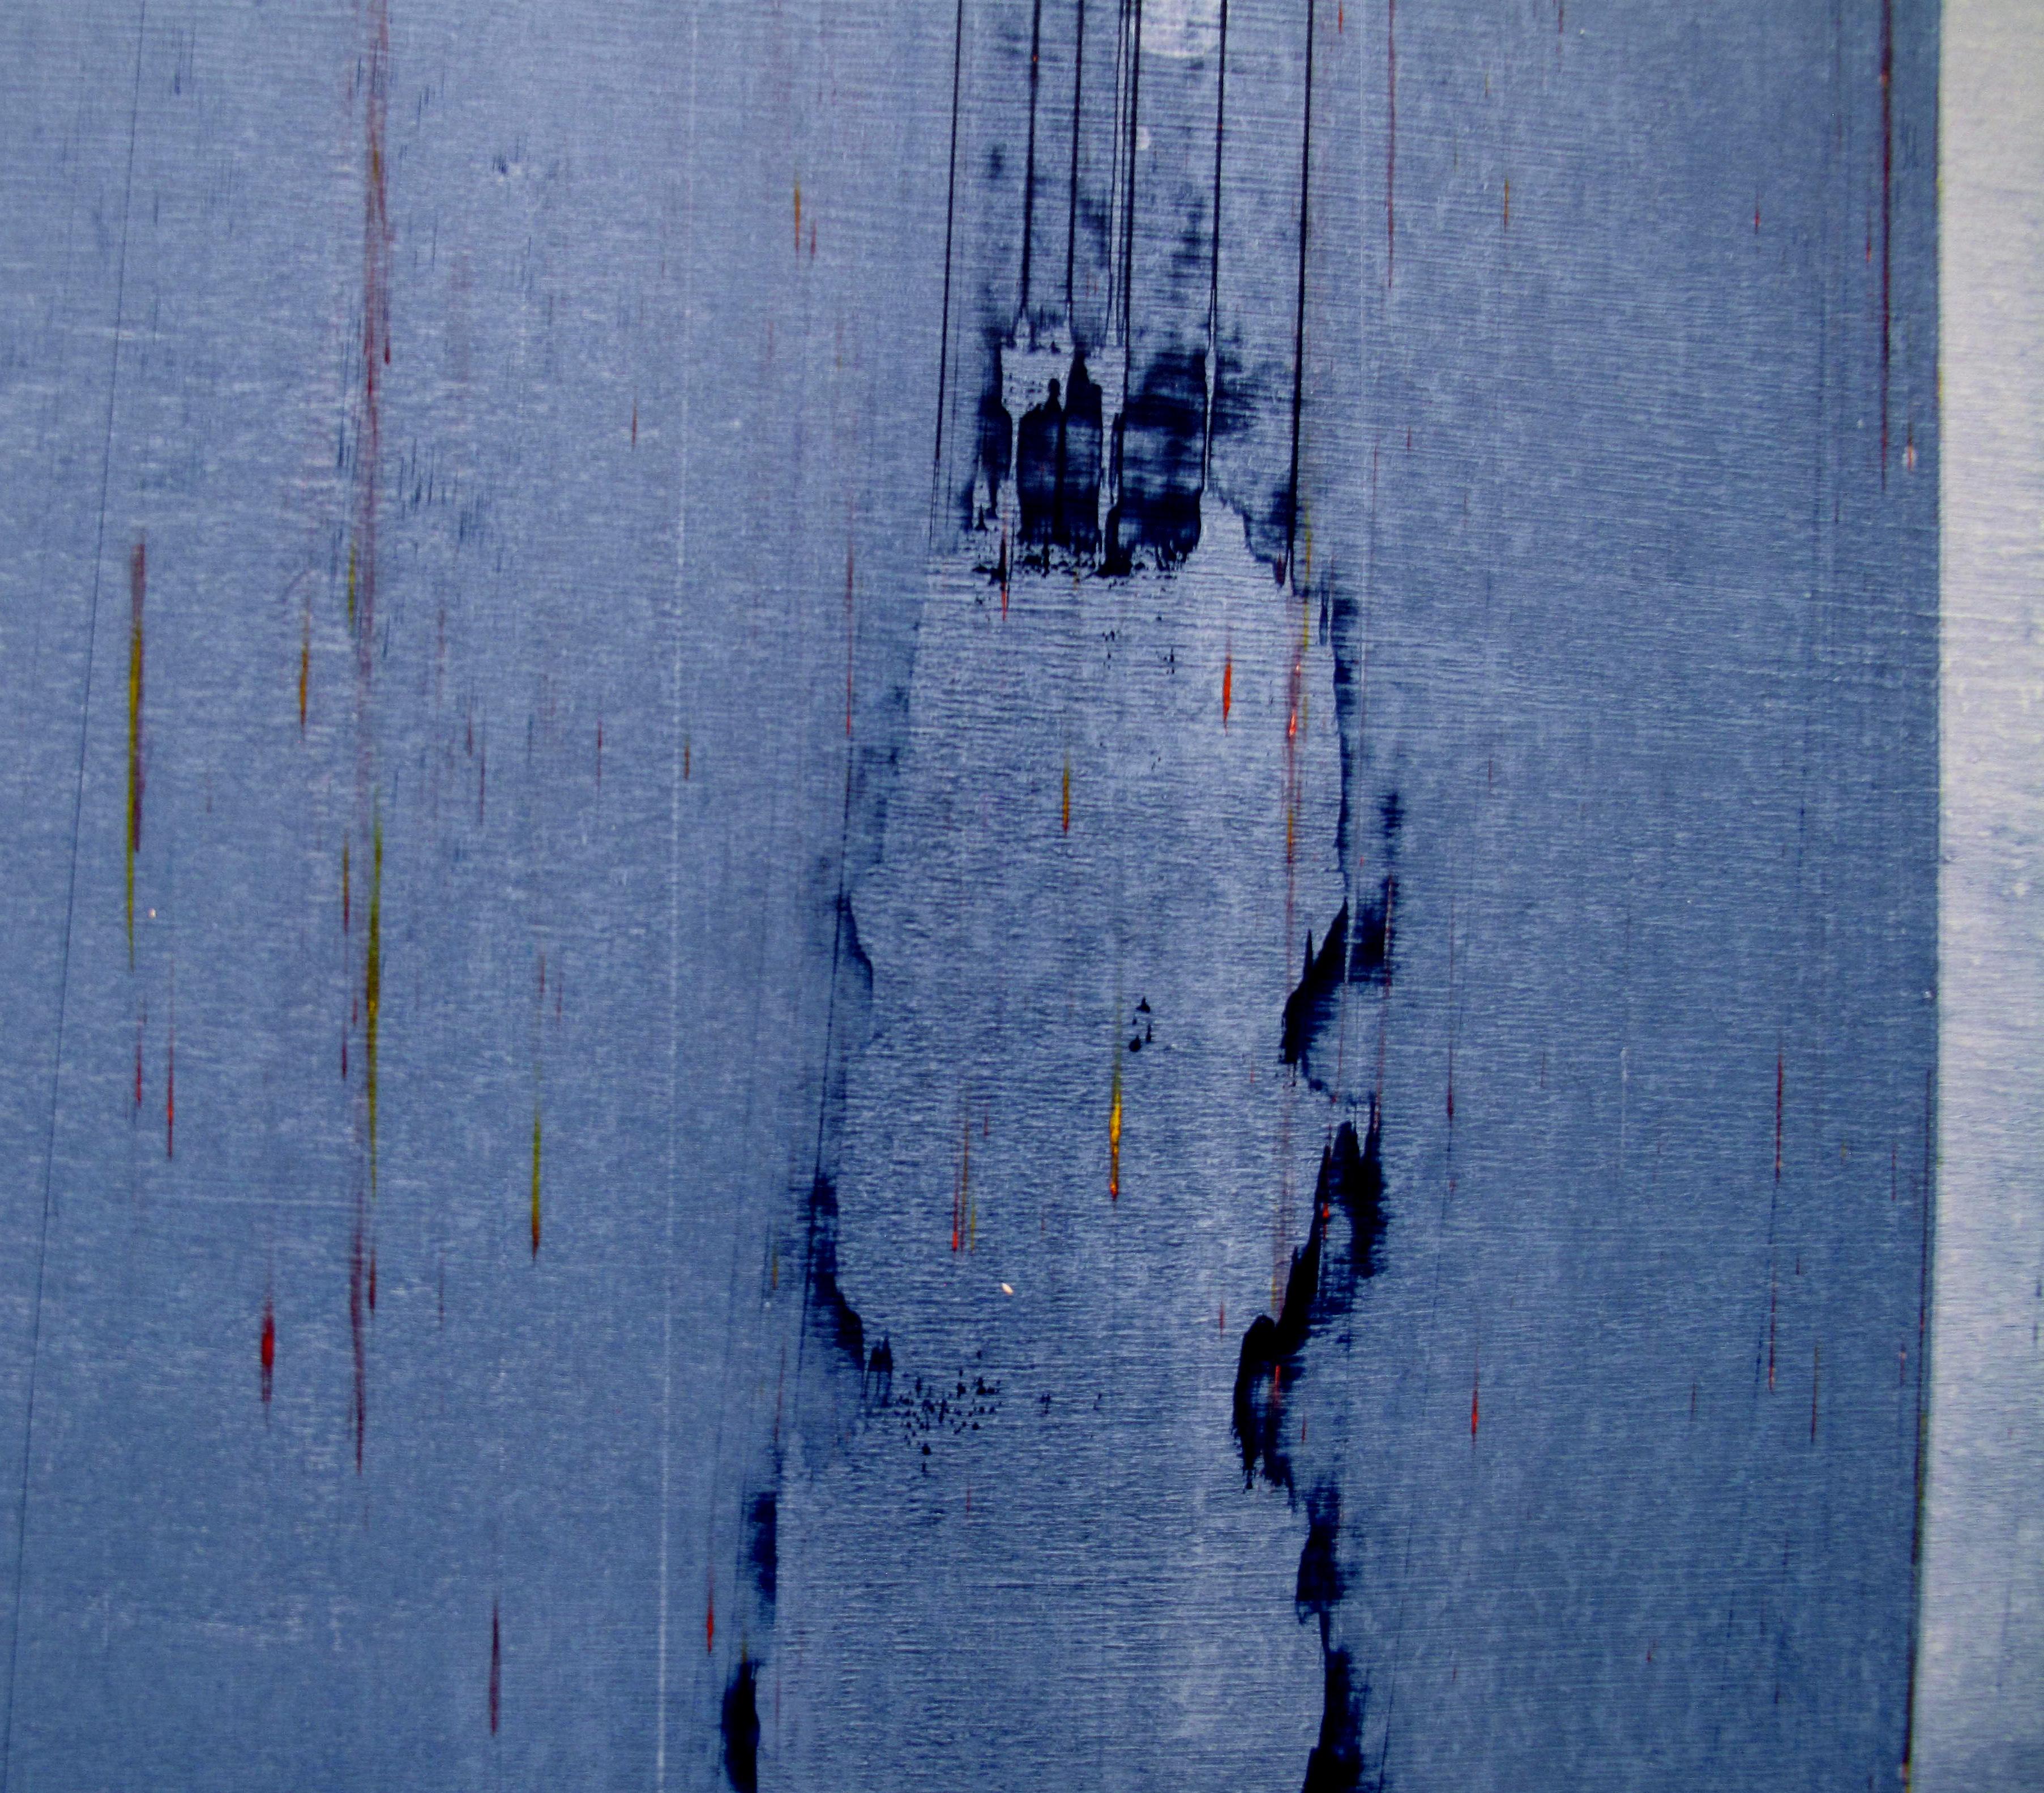 Nuit 02 (peinture abstraite)

Acrylique et pigments sur panneau de bois laqué - Non encadré

